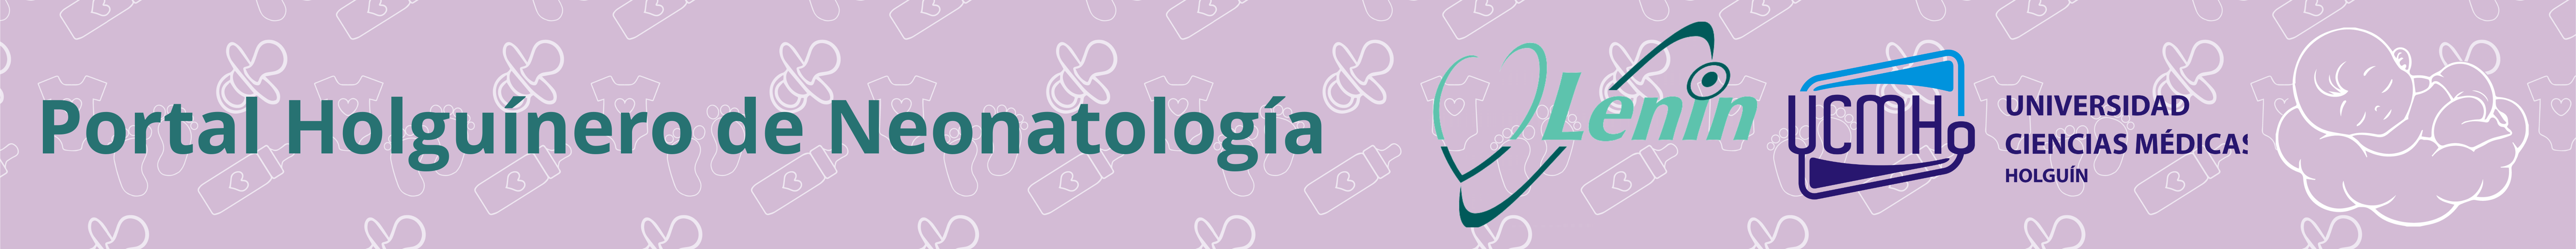 Portal de la Neonatología Holguín | Neonatología